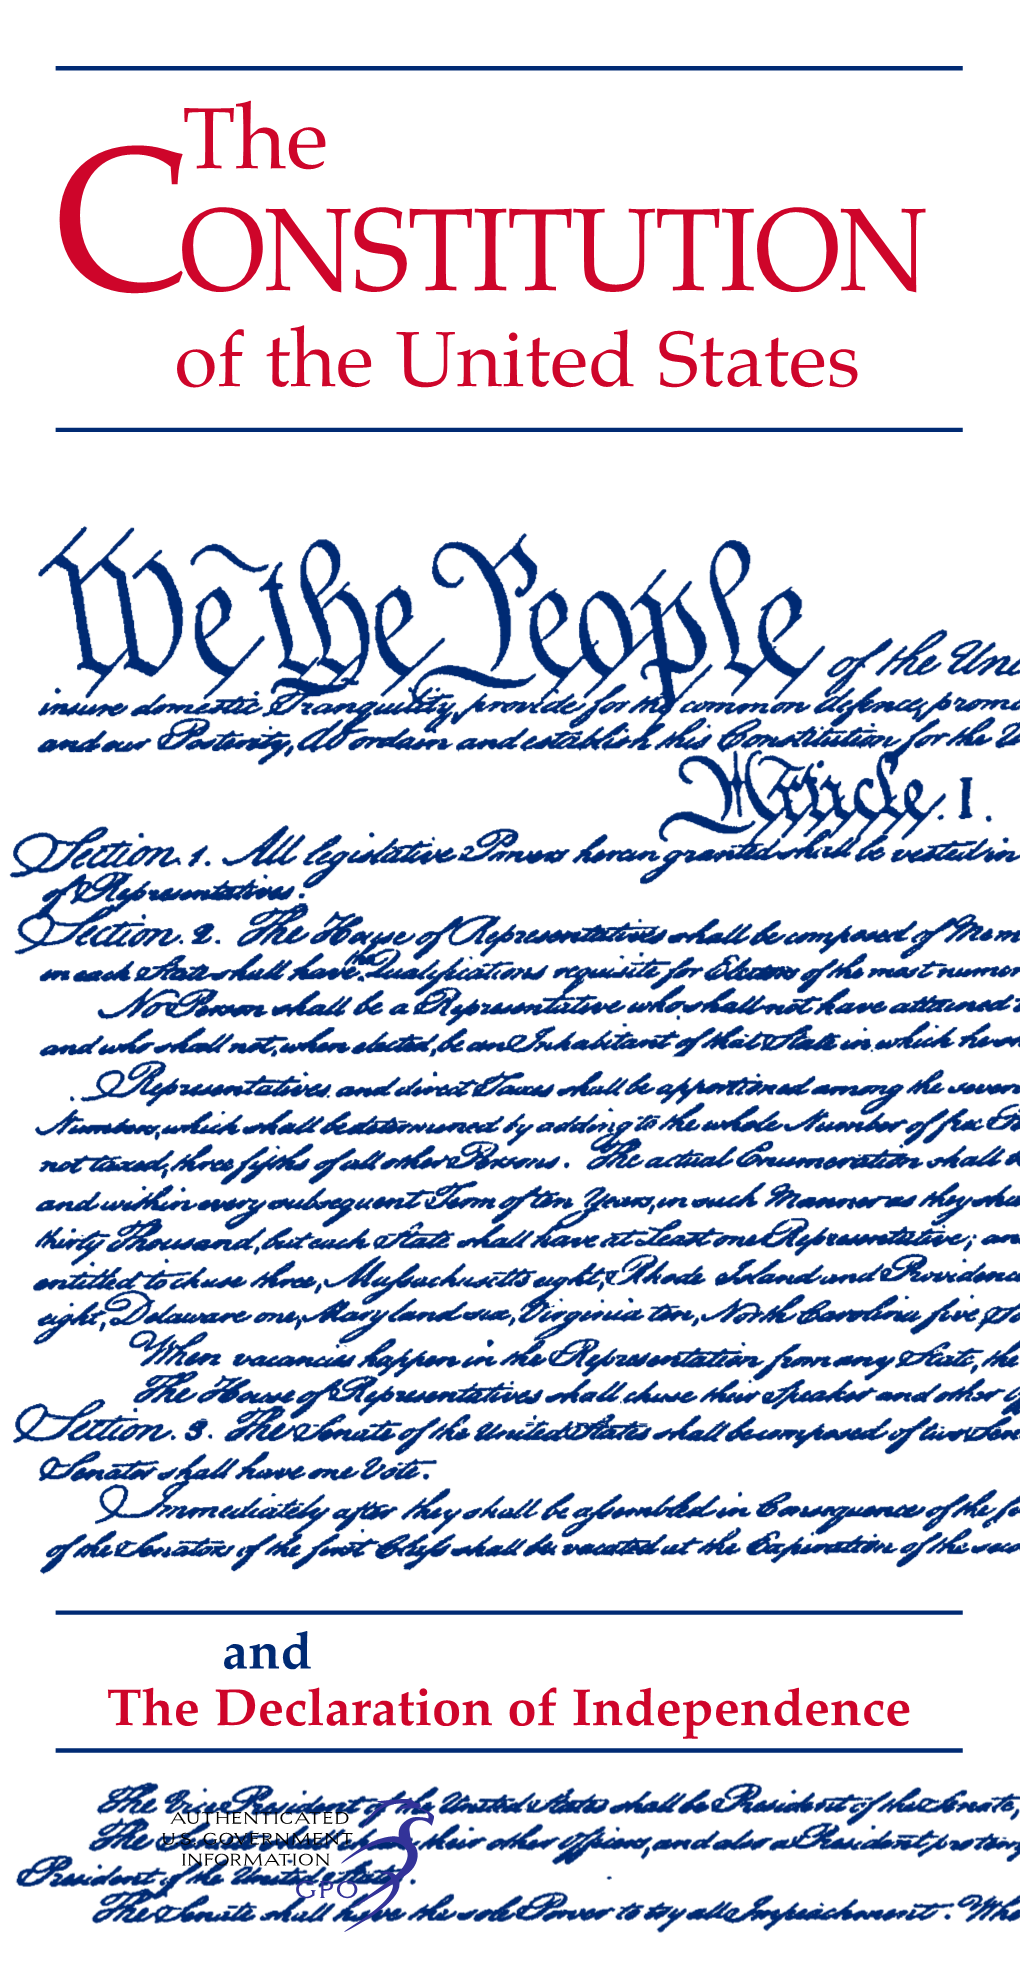 Senate Document 116-3, the Pocket Constitution